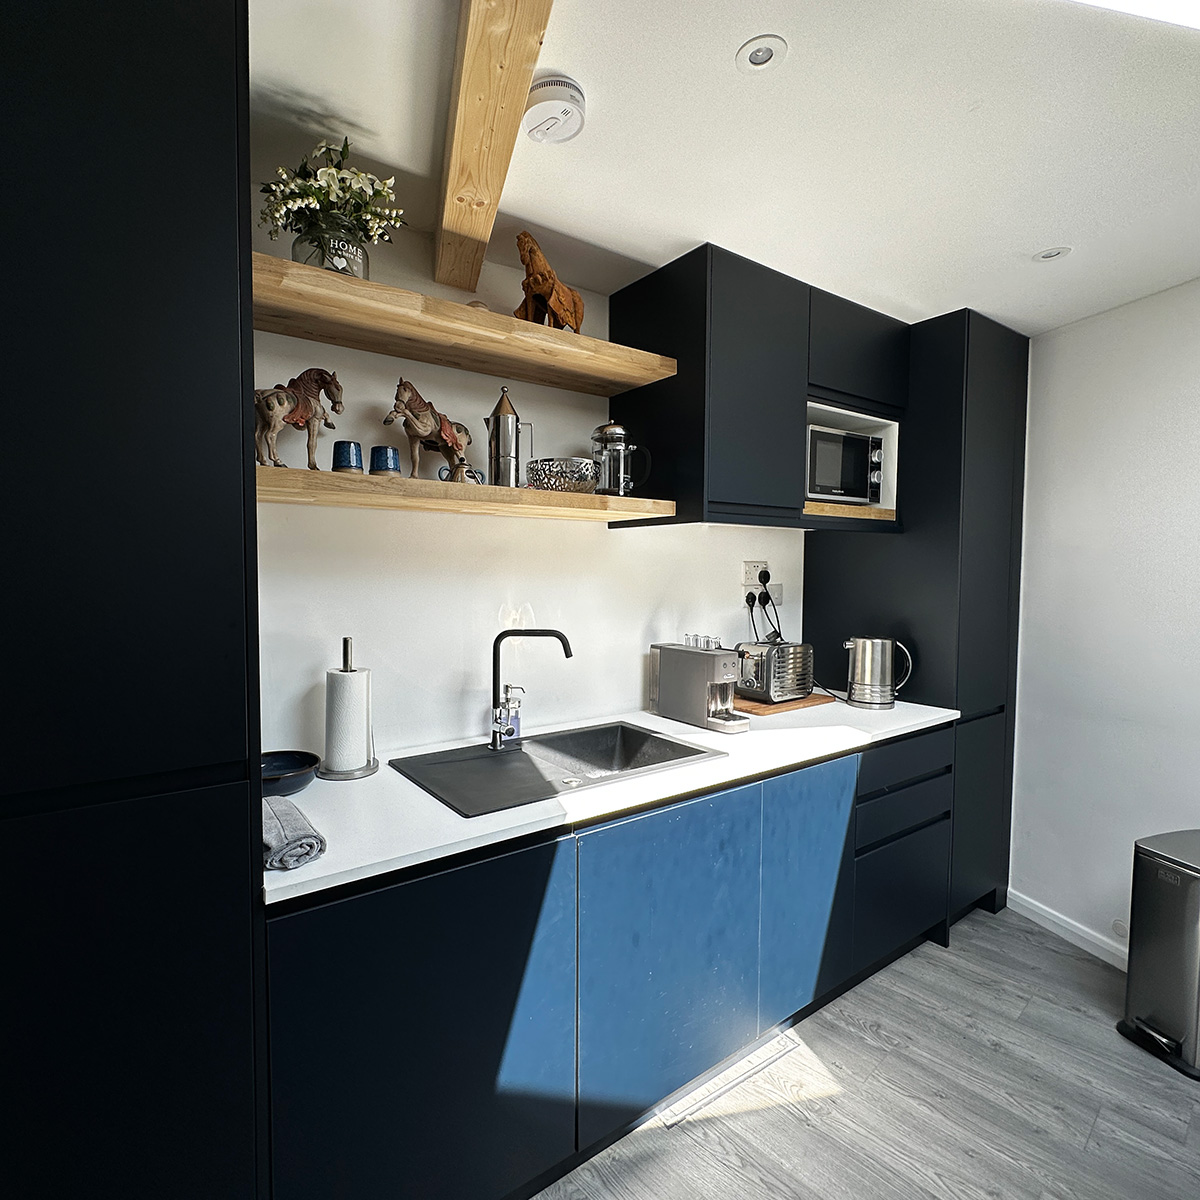 Designer kitchen area inside bespoke mobile home